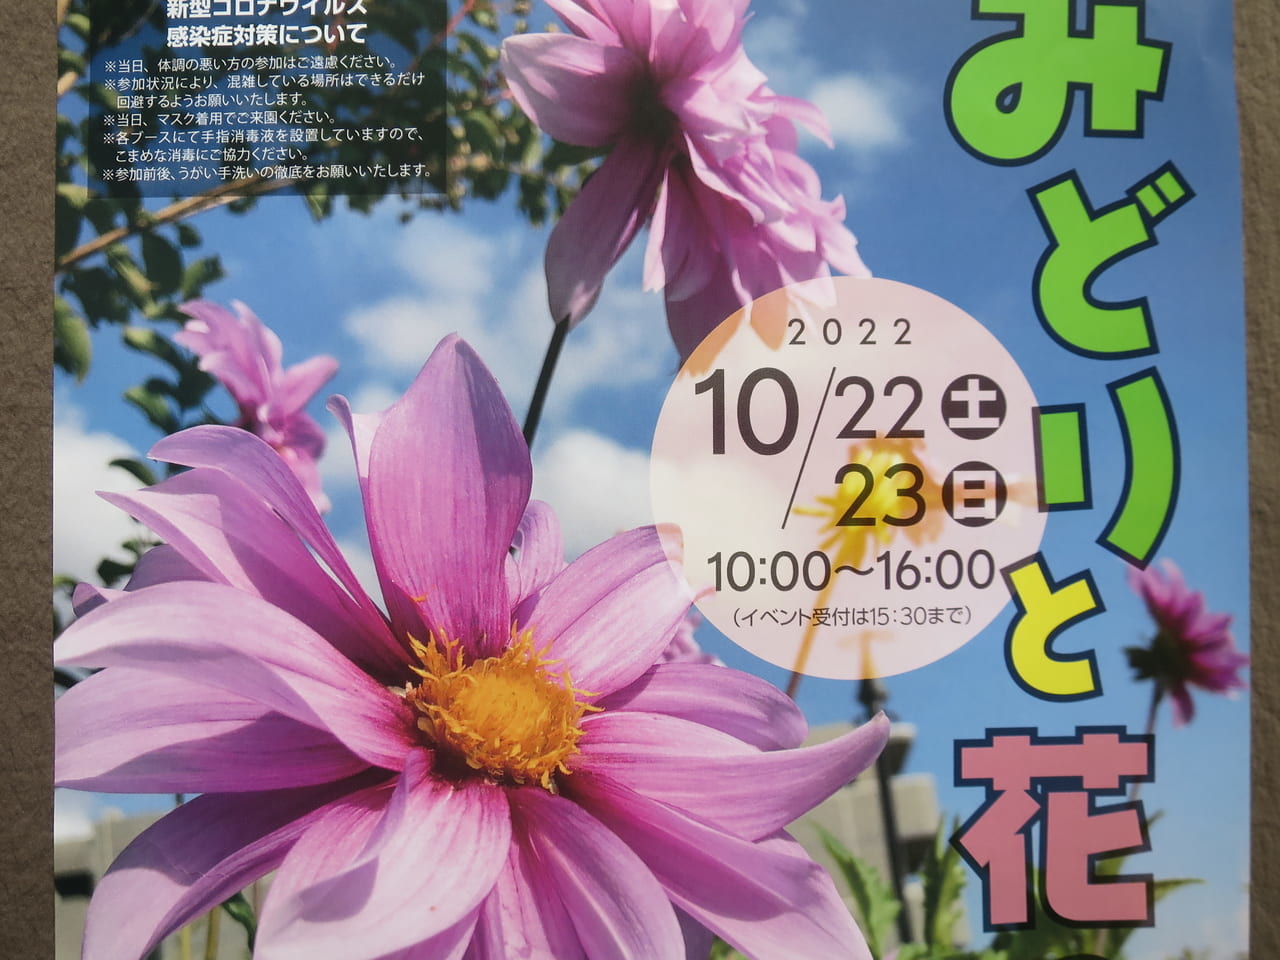 みどりと花のフェスティバル東品川海上公園